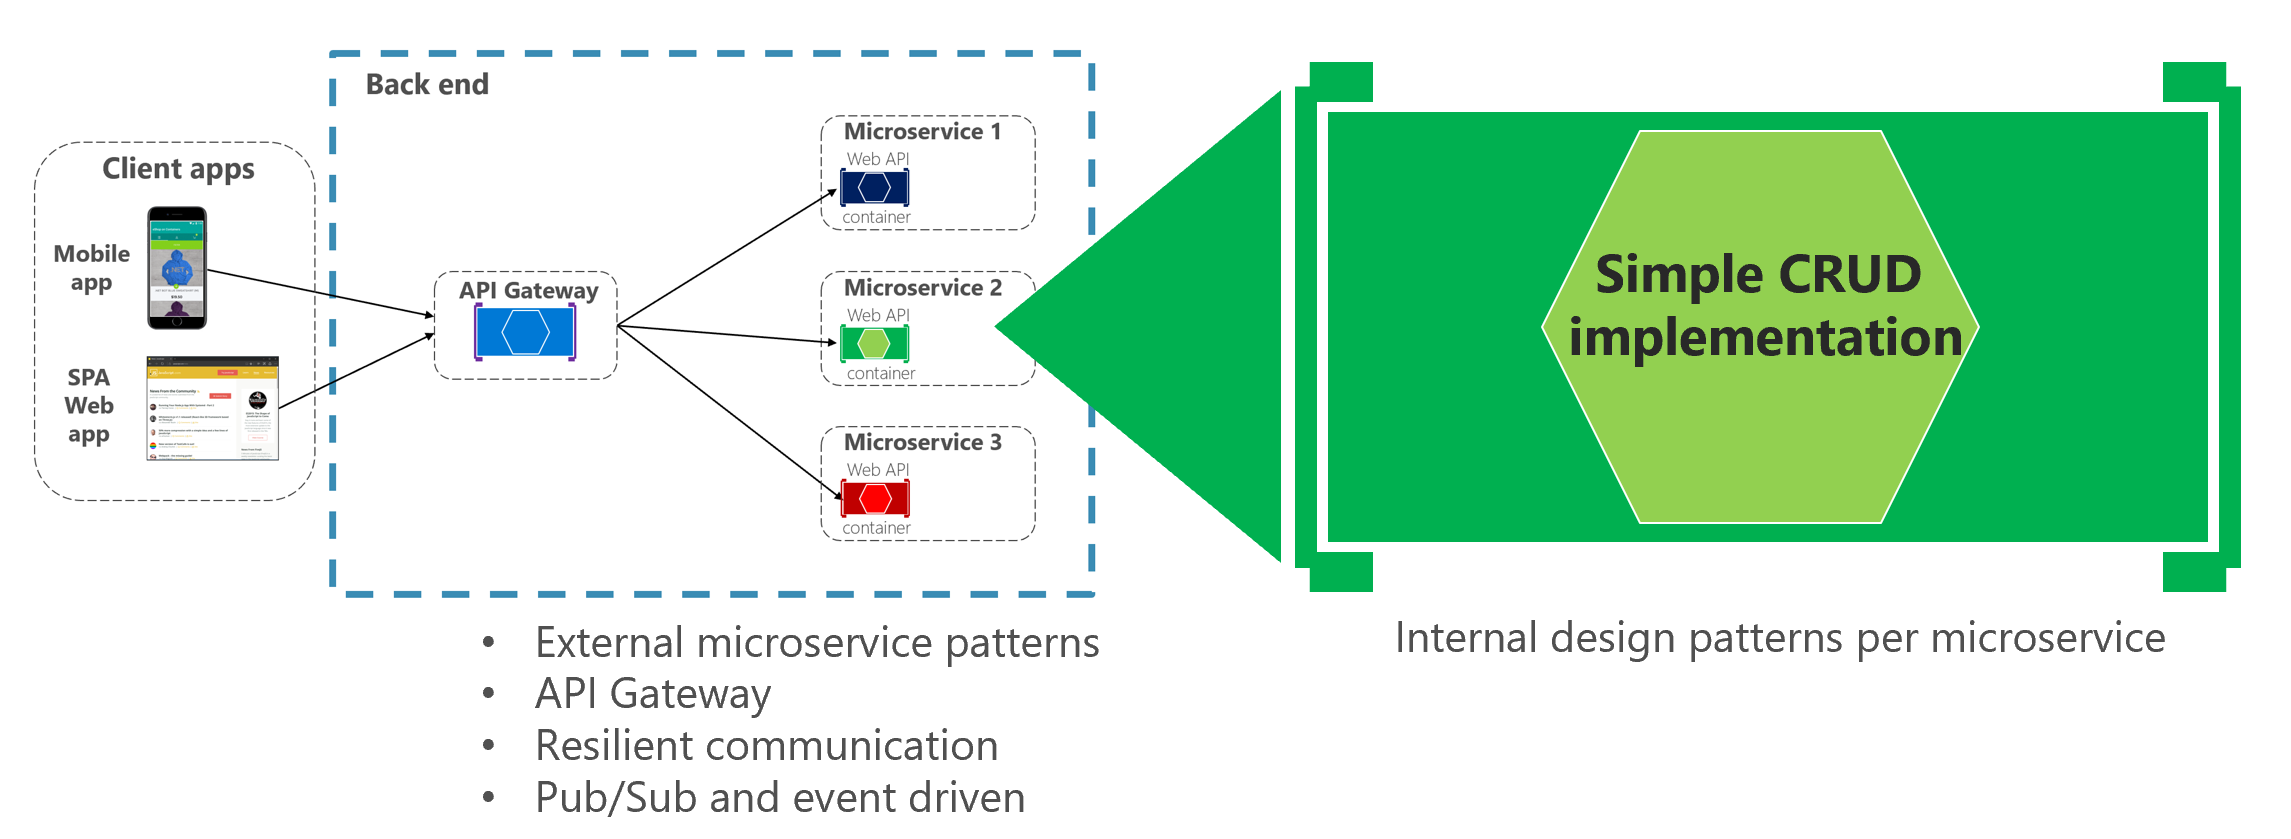 显示简单 CRUD 微服务内部设计模式的关系图。